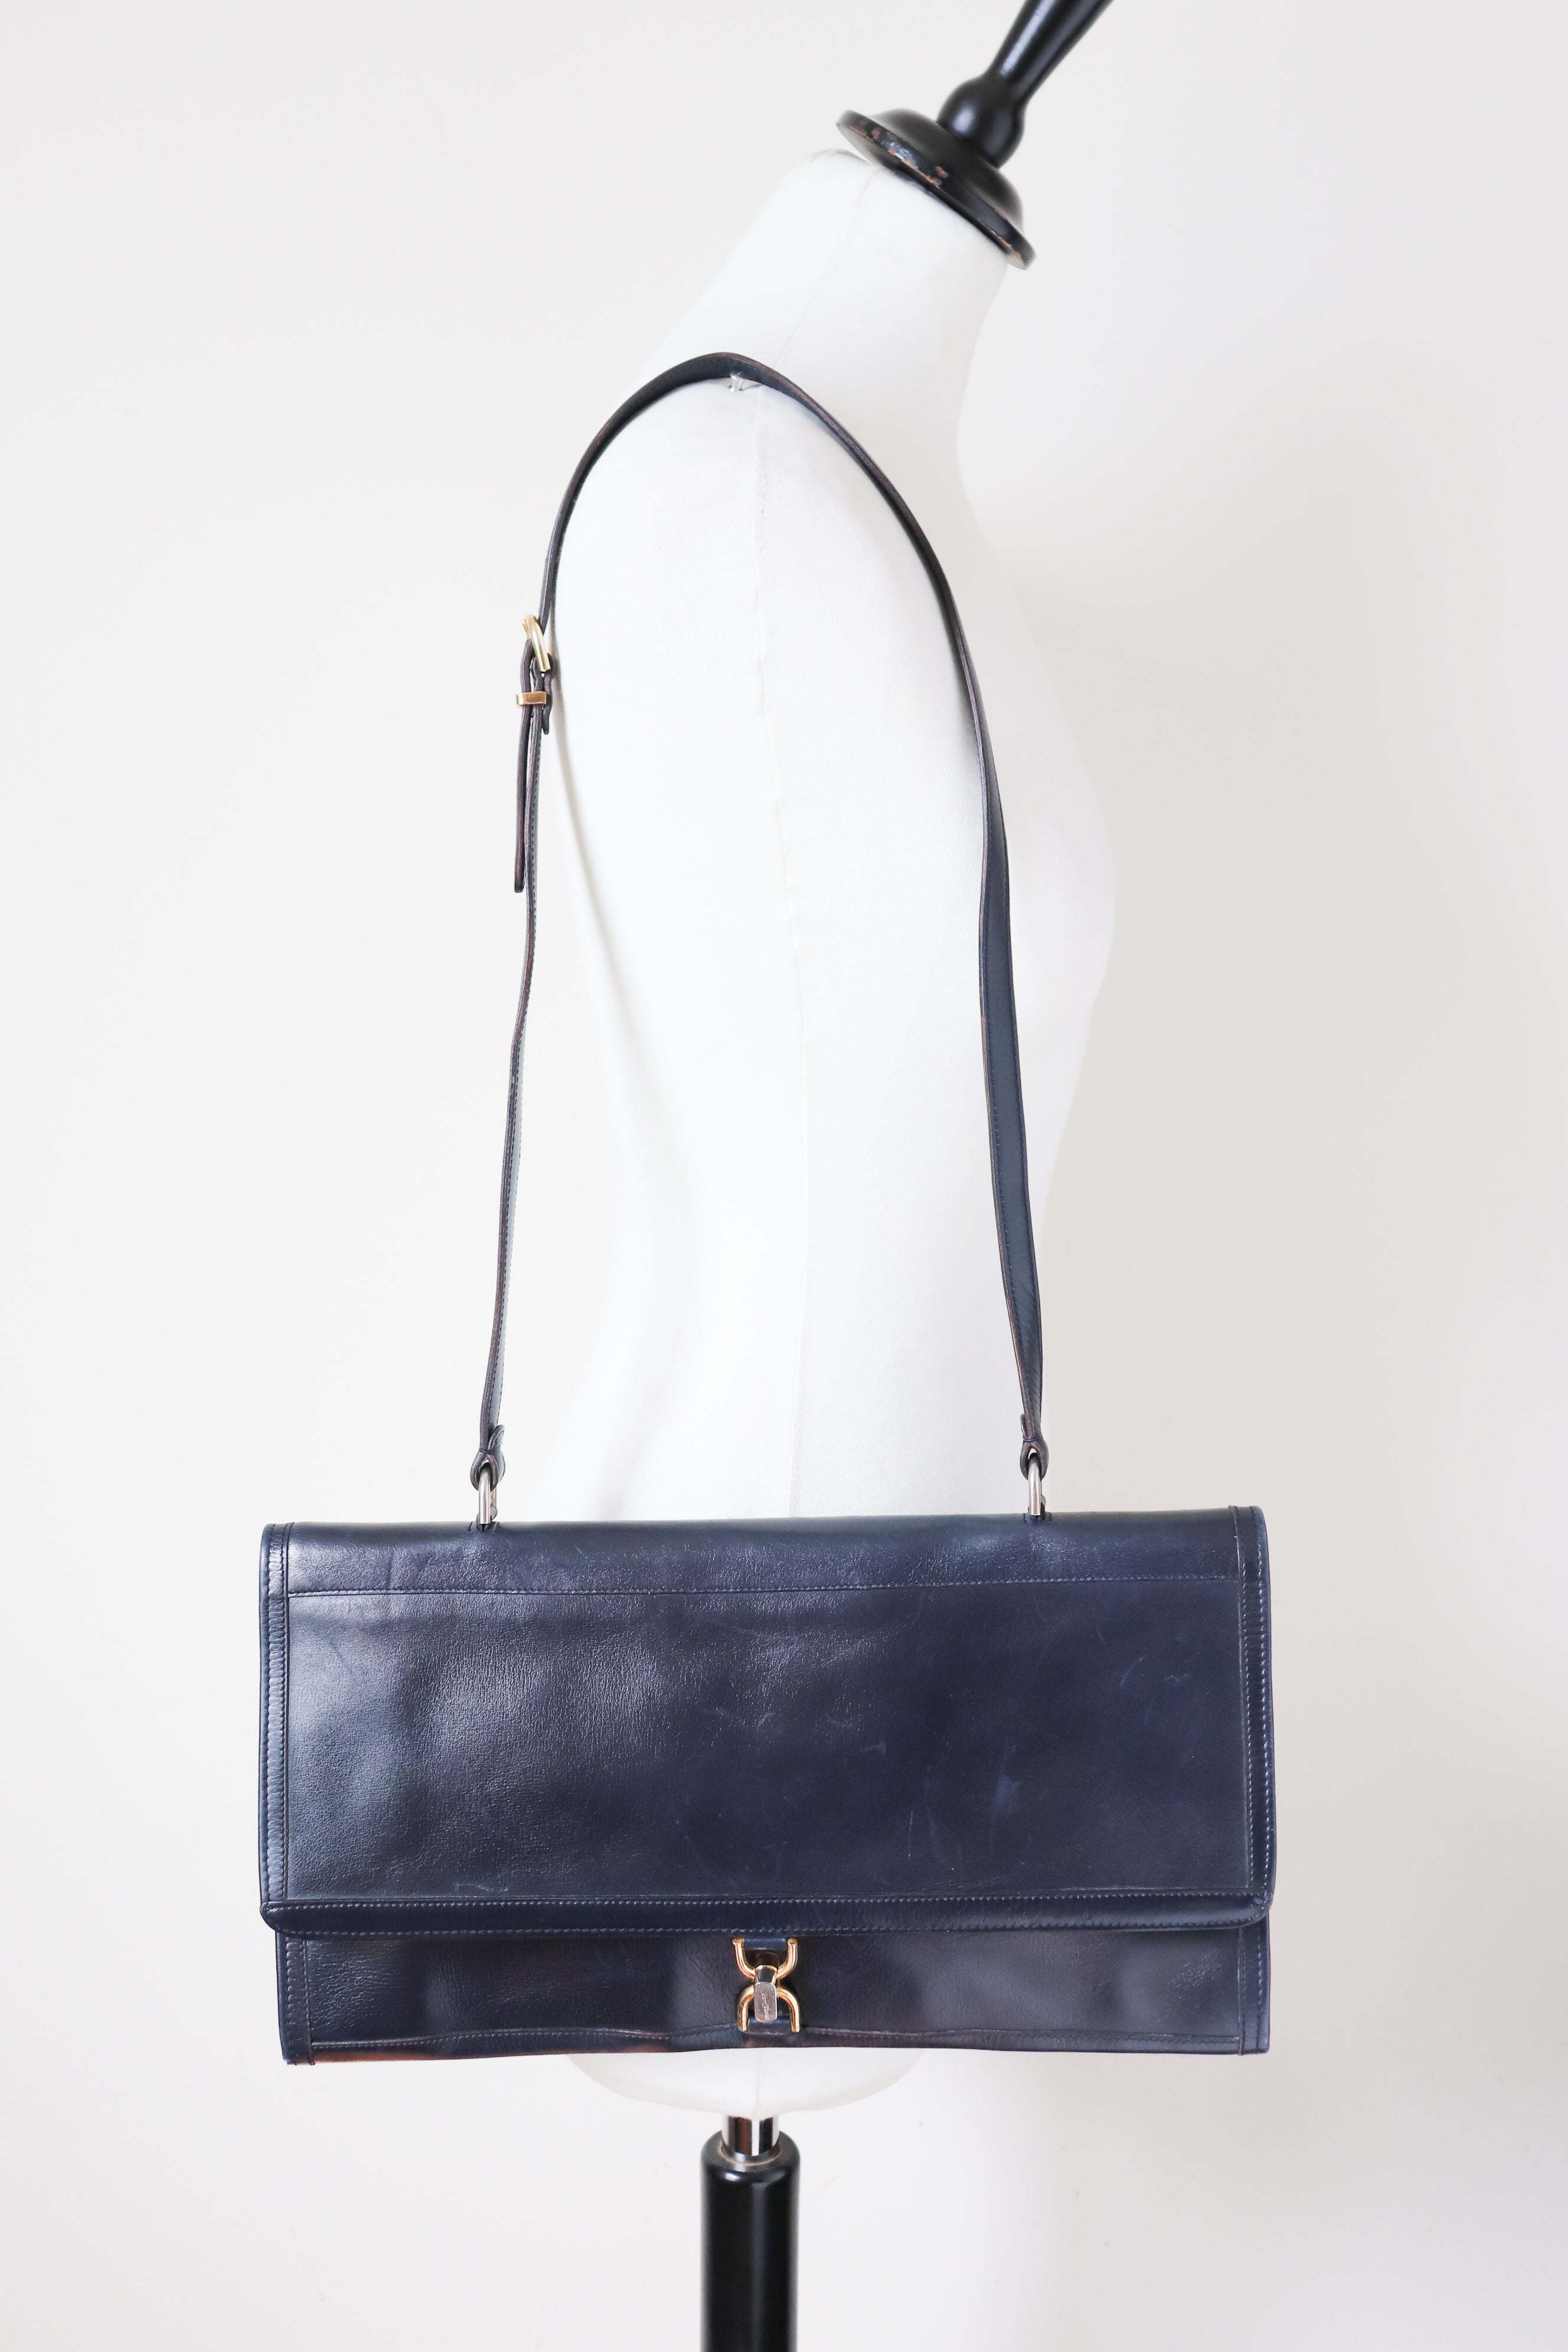 Vintage Flat Shoulder Bag - Blue leather - 1970s - Jean Claude - Medium